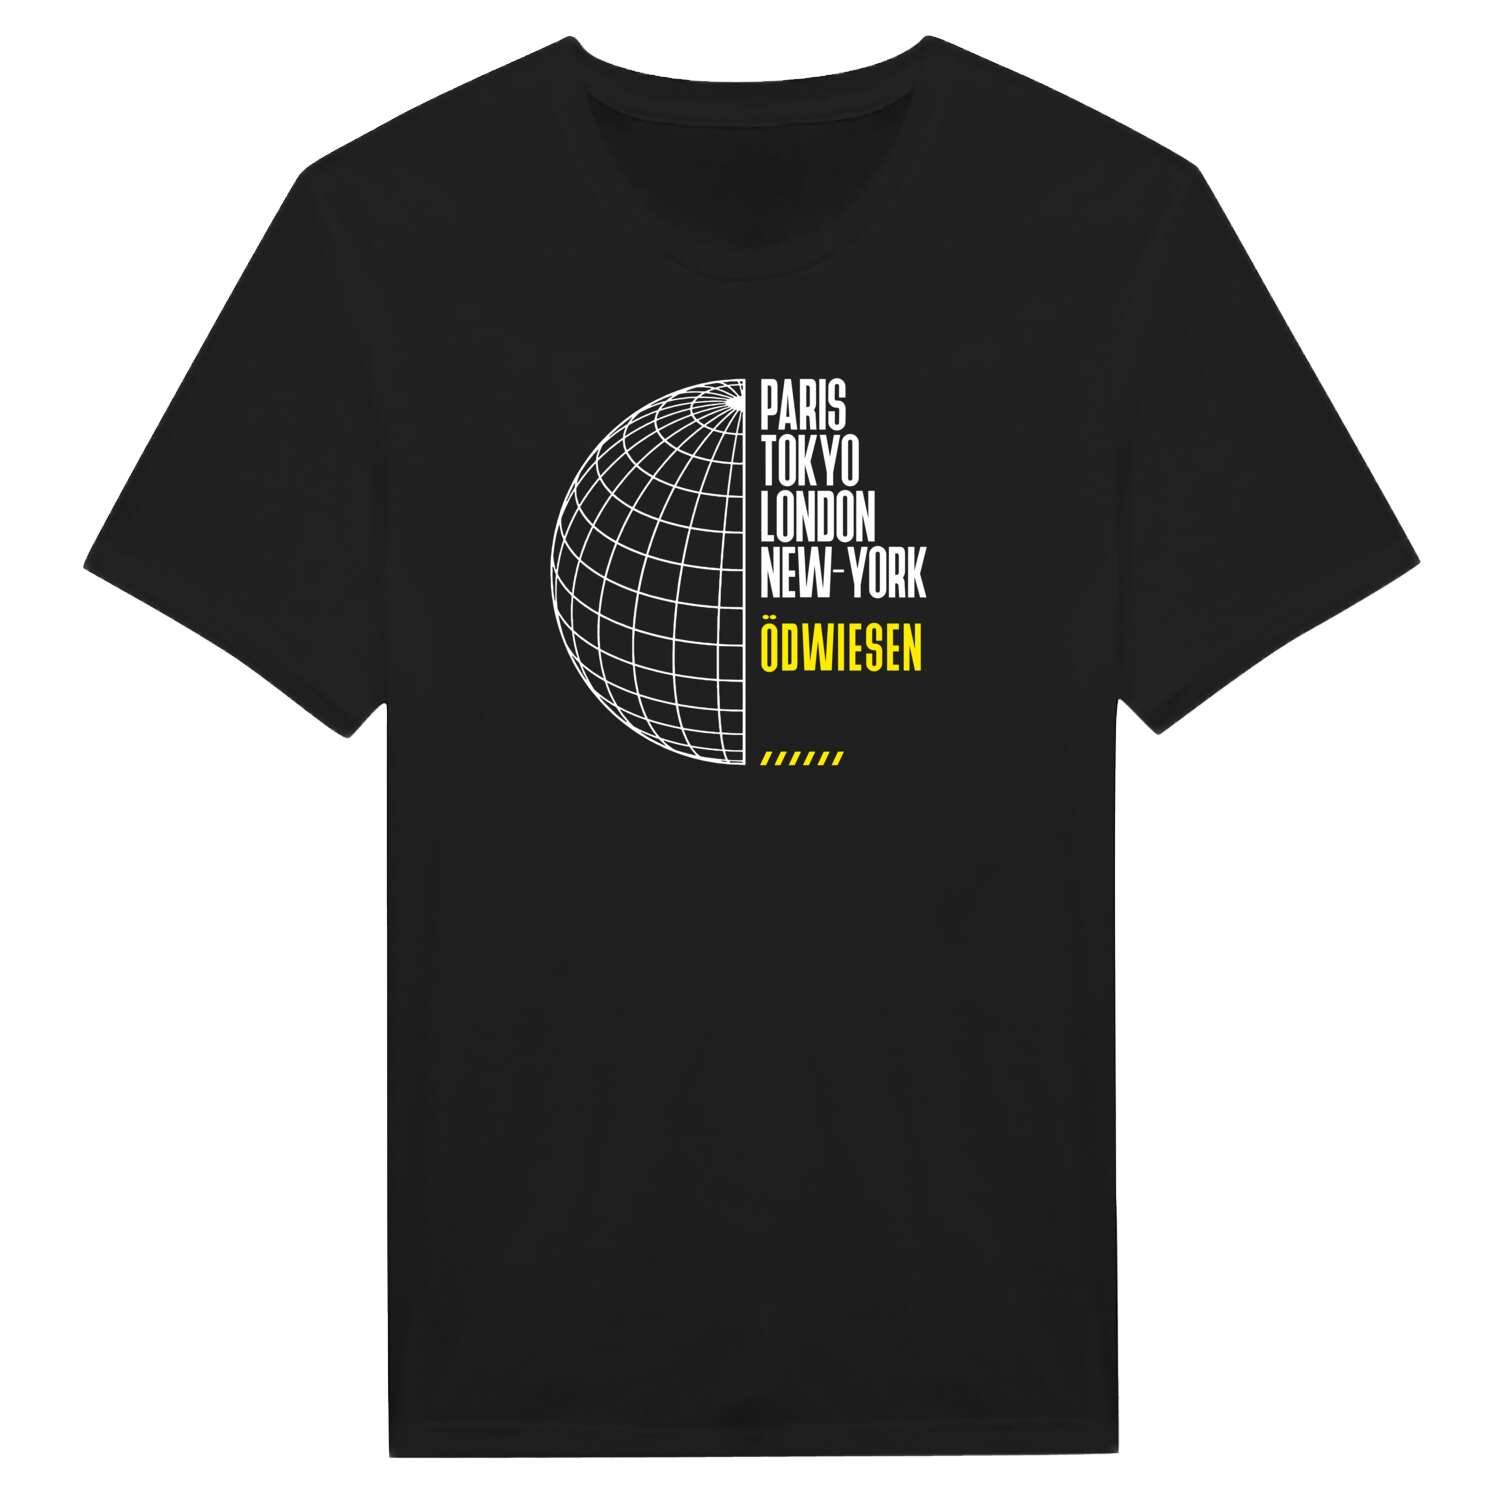 Ödwiesen T-Shirt »Paris Tokyo London«